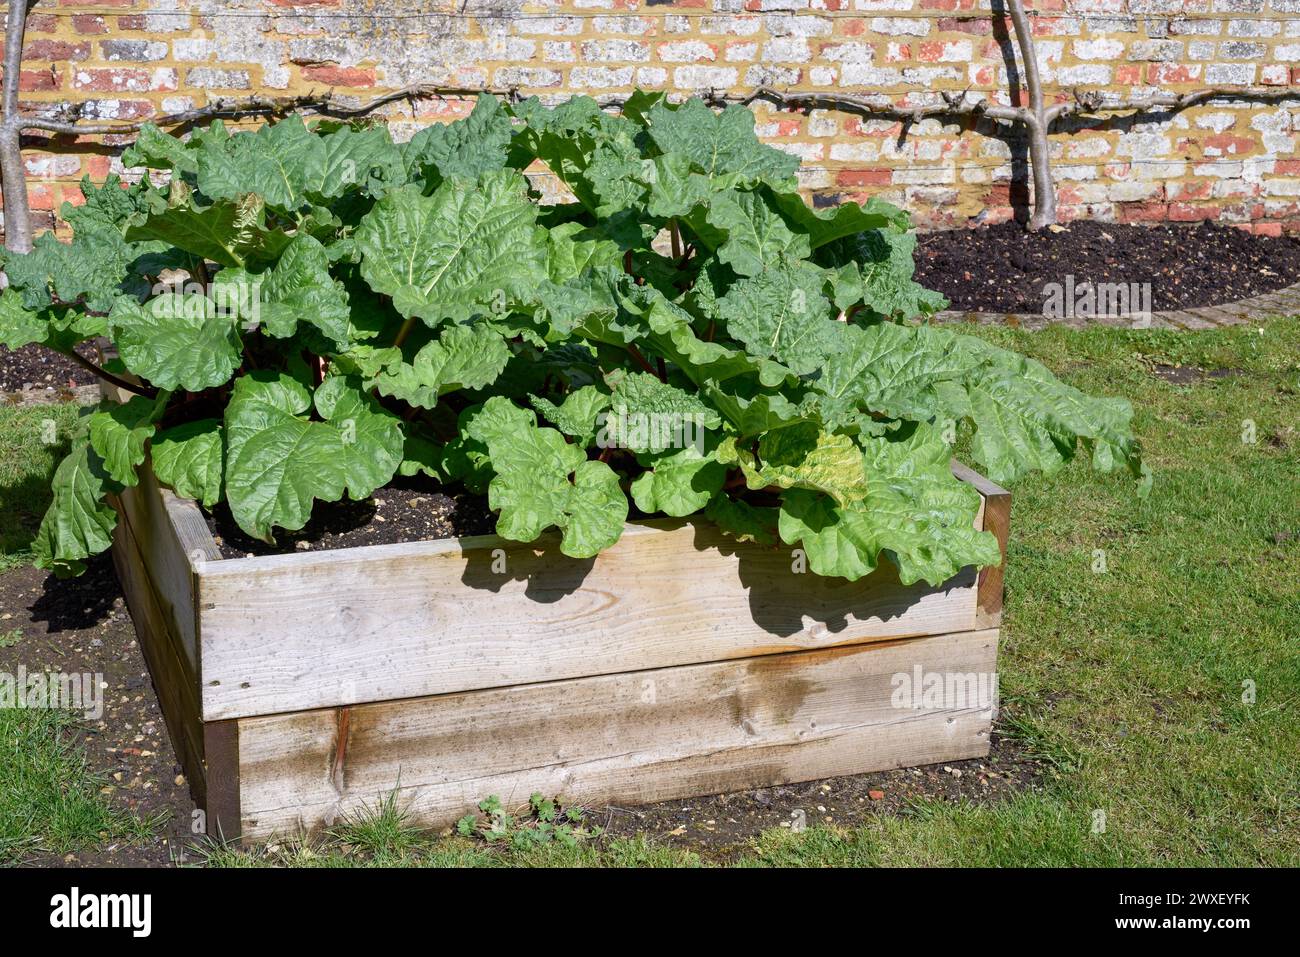 Rhubarbe cultivée à la maison dans un planteur surélevé sur l'allocation dans un jardin pour cultiver la nourriture de manière durable Banque D'Images